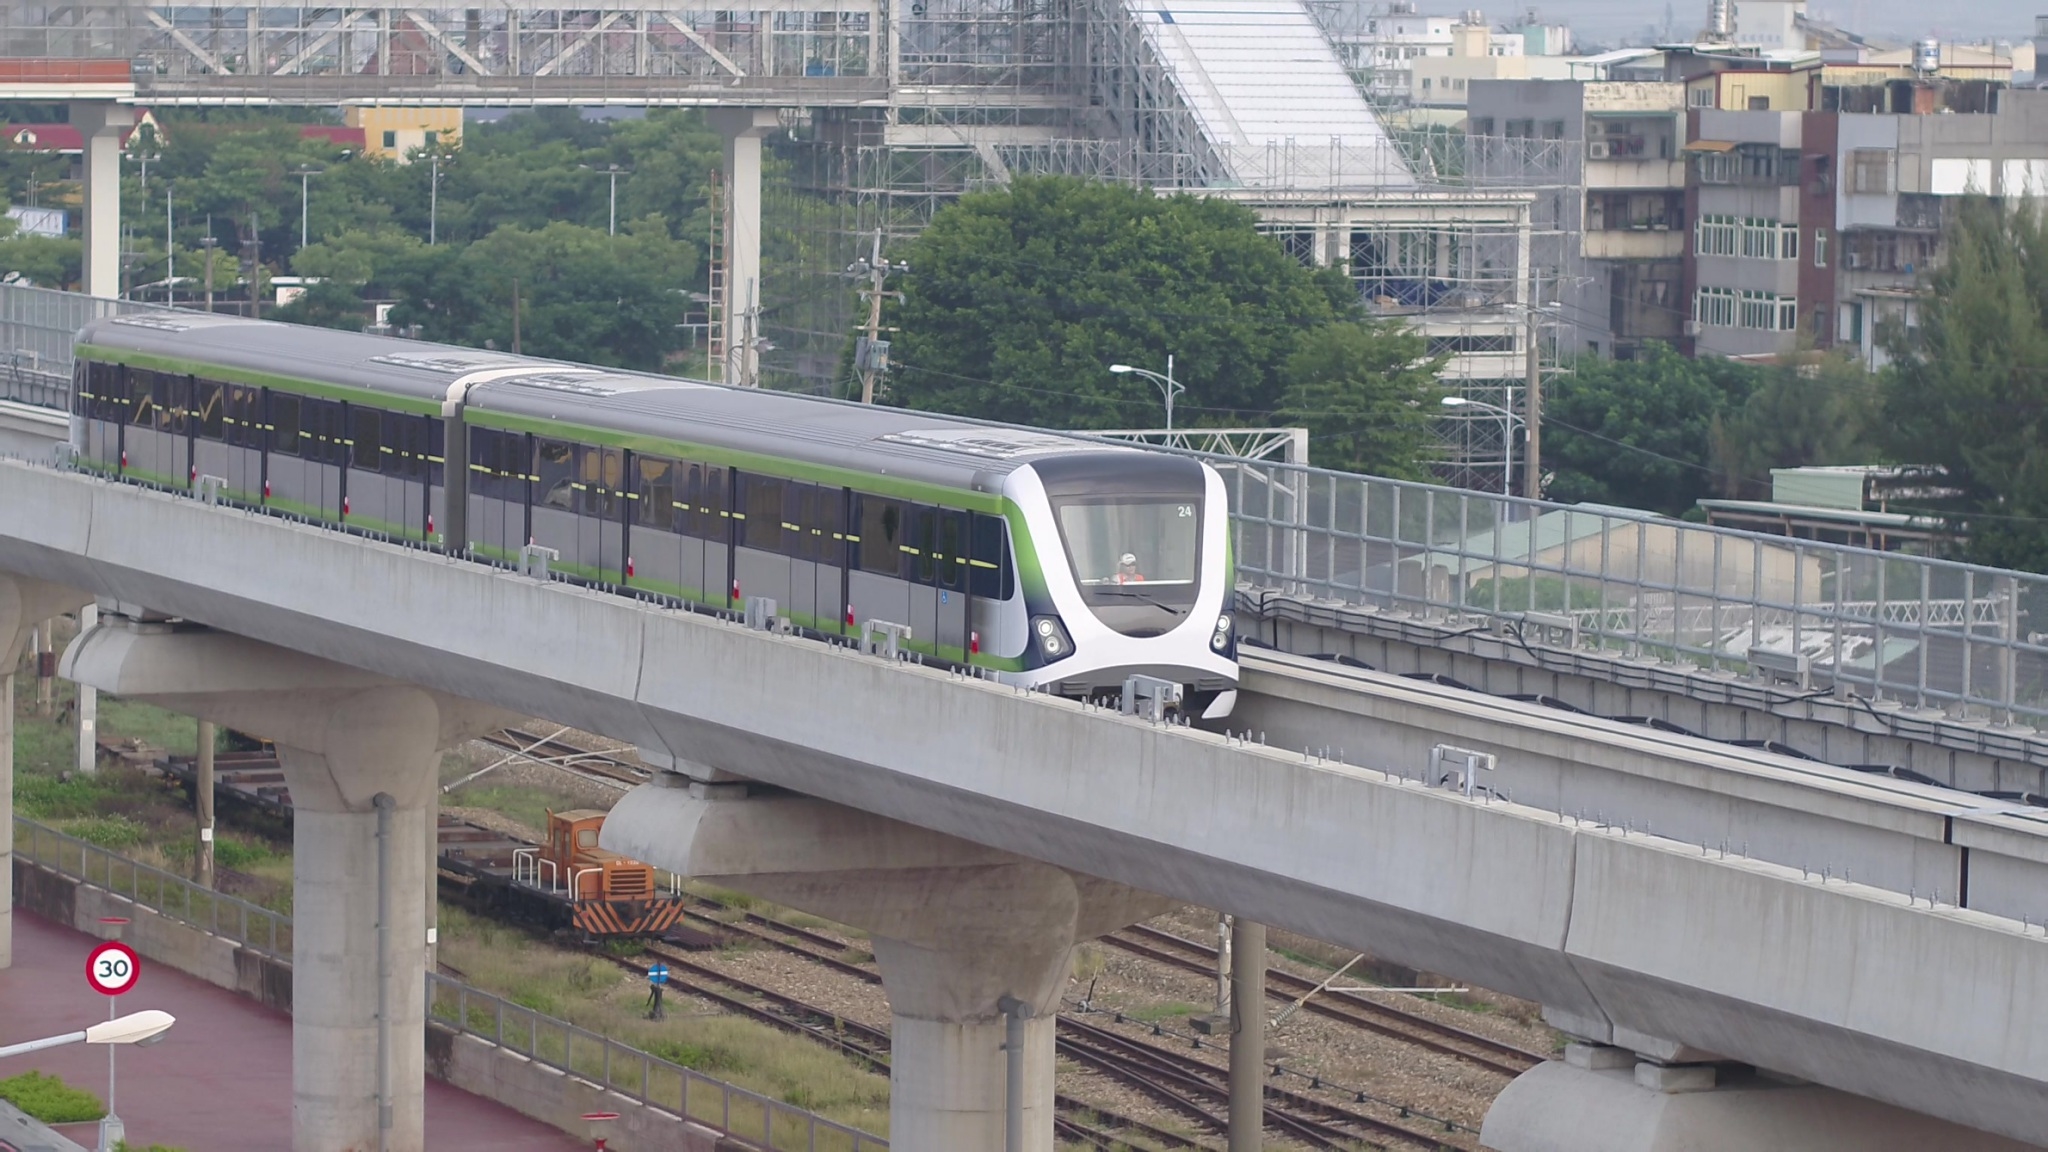 台中捷運綠線將於年底通車，因應未來營運所需，台中捷運公司公開招募基層主管及中階幕僚共42人。(記者高秋敏翻攝)